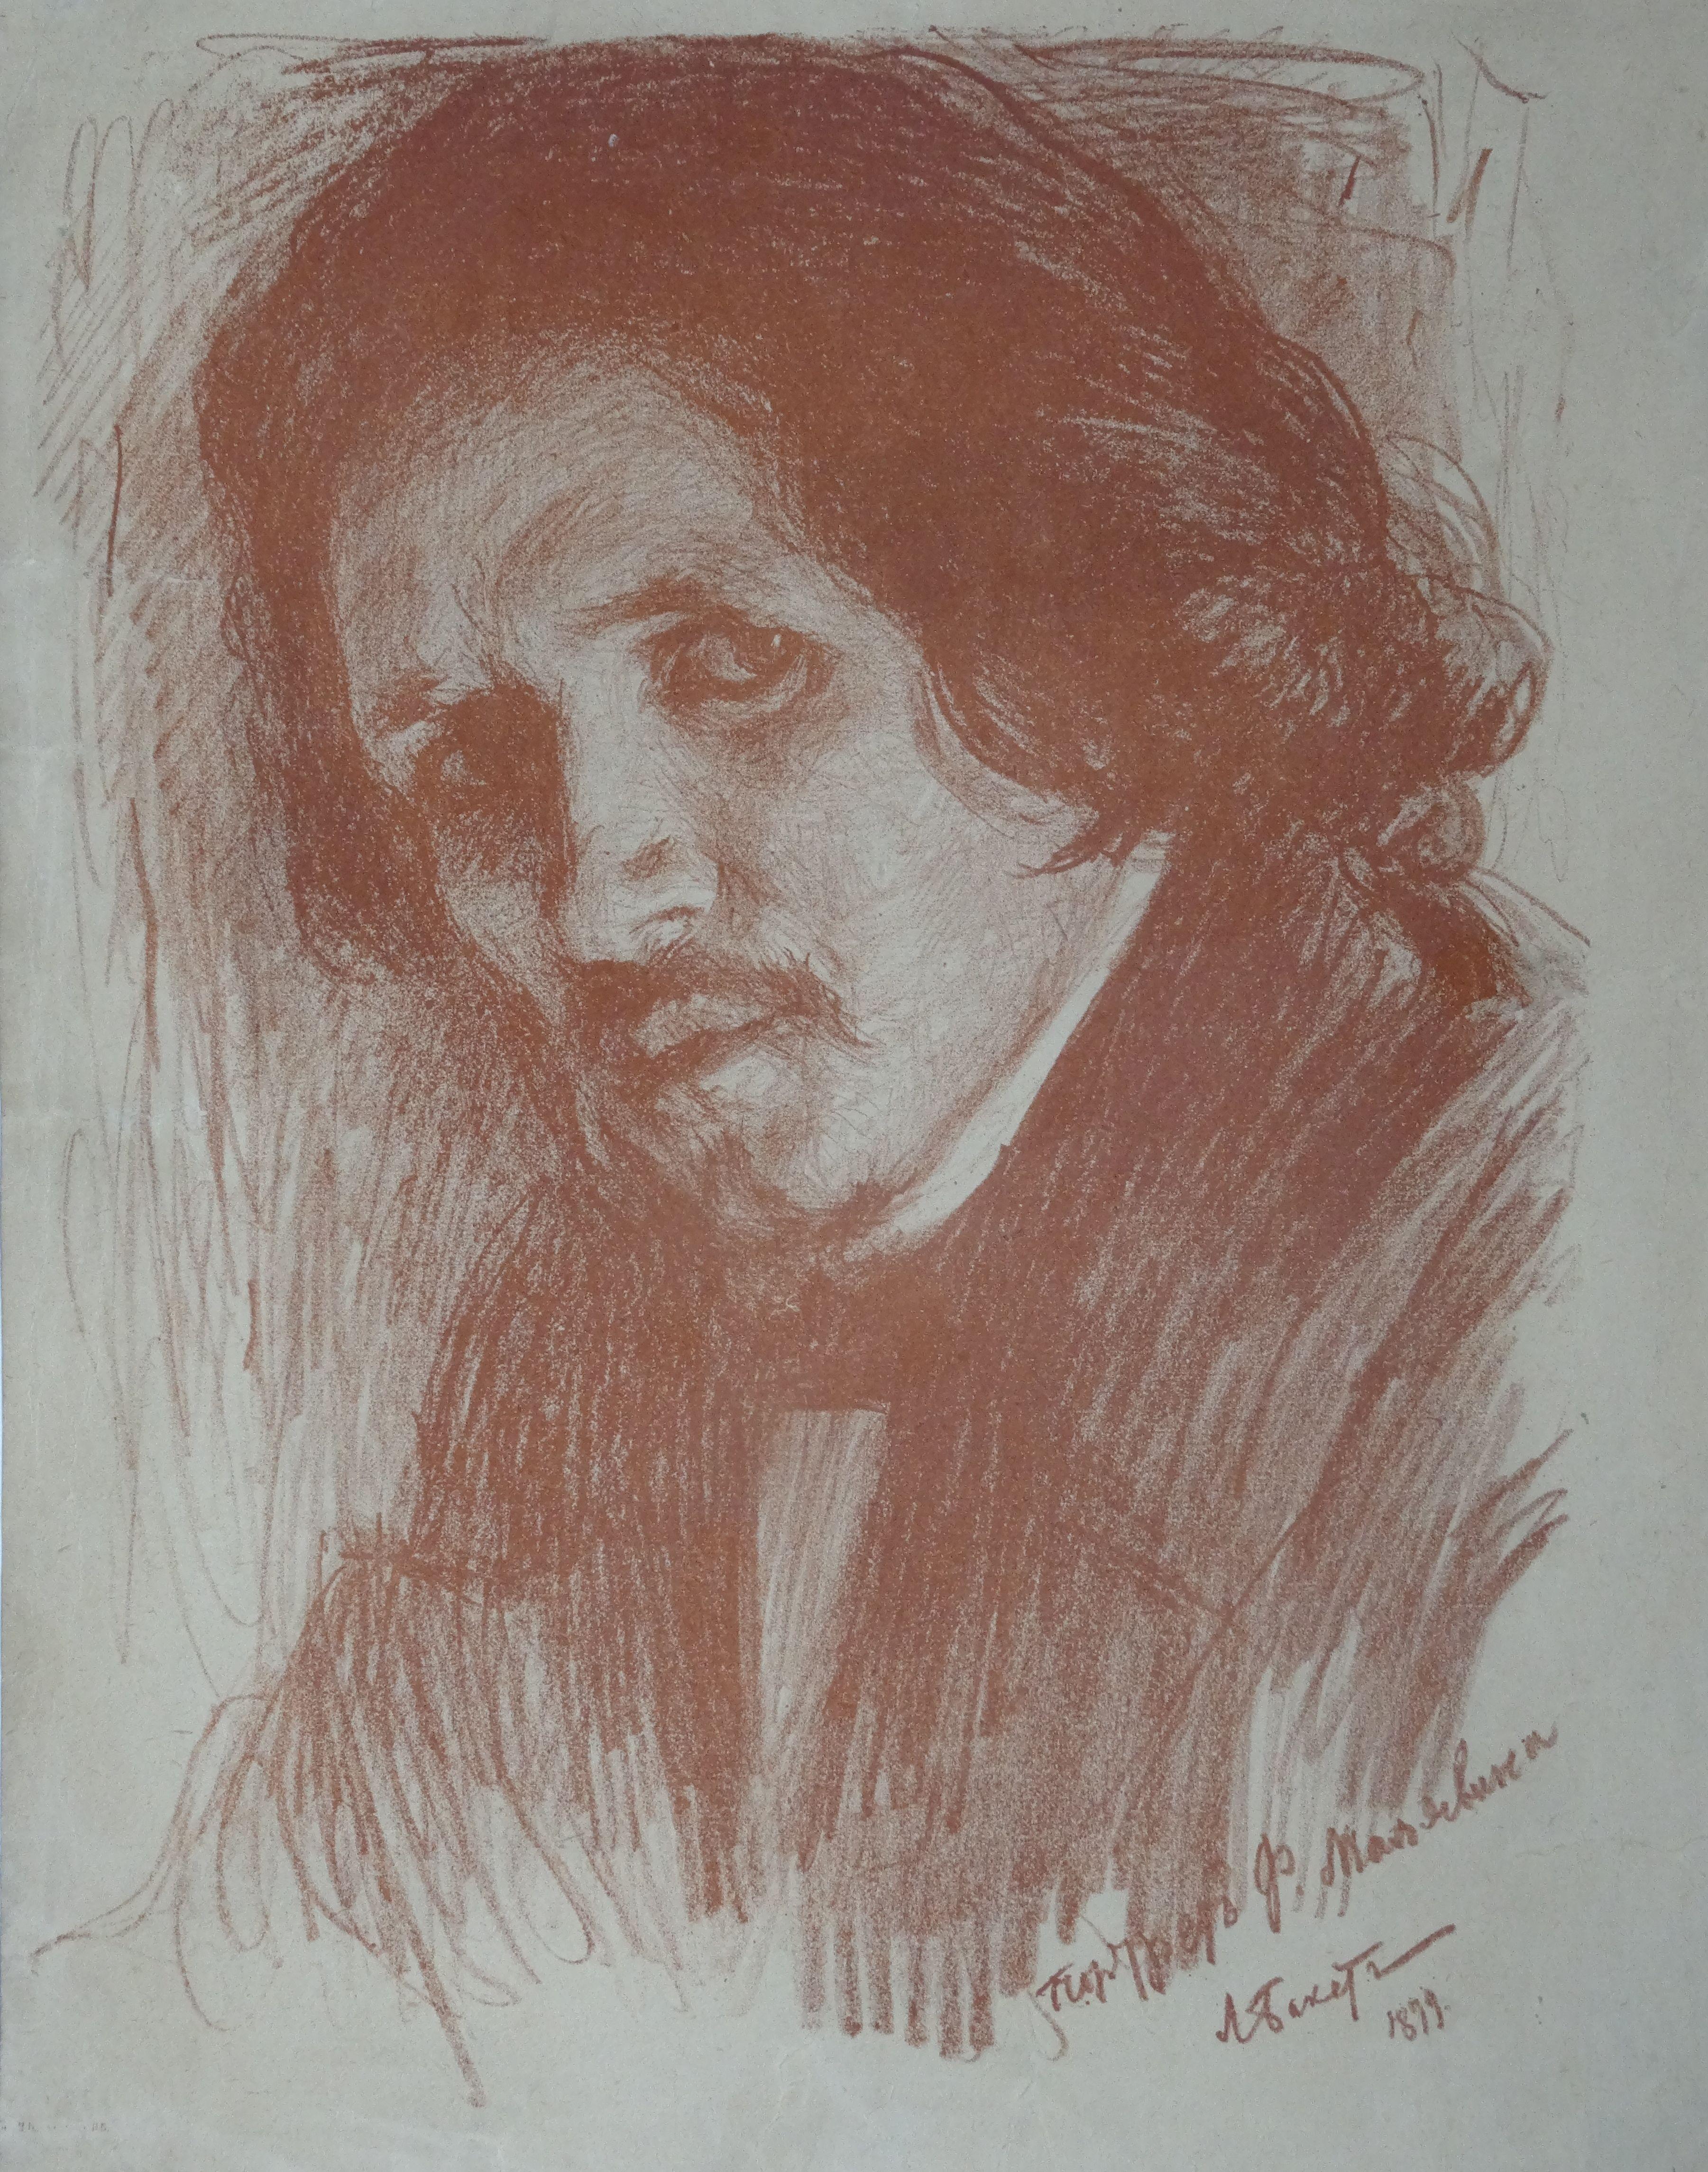 Porträt von Philip Andreevich Malavin.1879. Papier, Lithografie, 32x23 cm mit Def